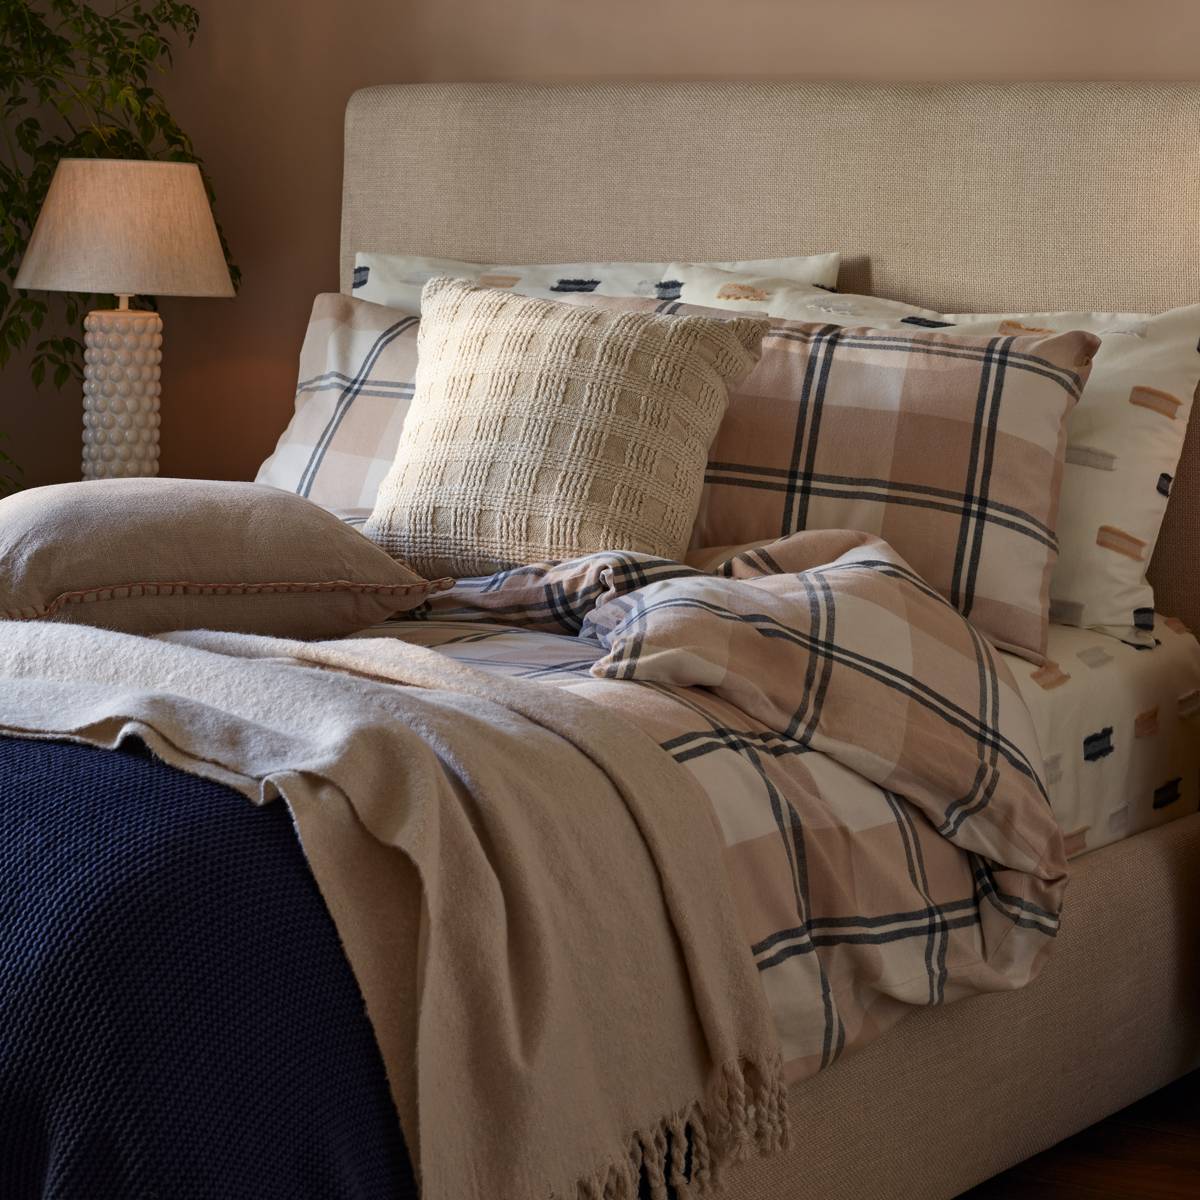 سرير مفروش بأغطية أسرّة منقوشة، وبألوان محايدة وكحلي